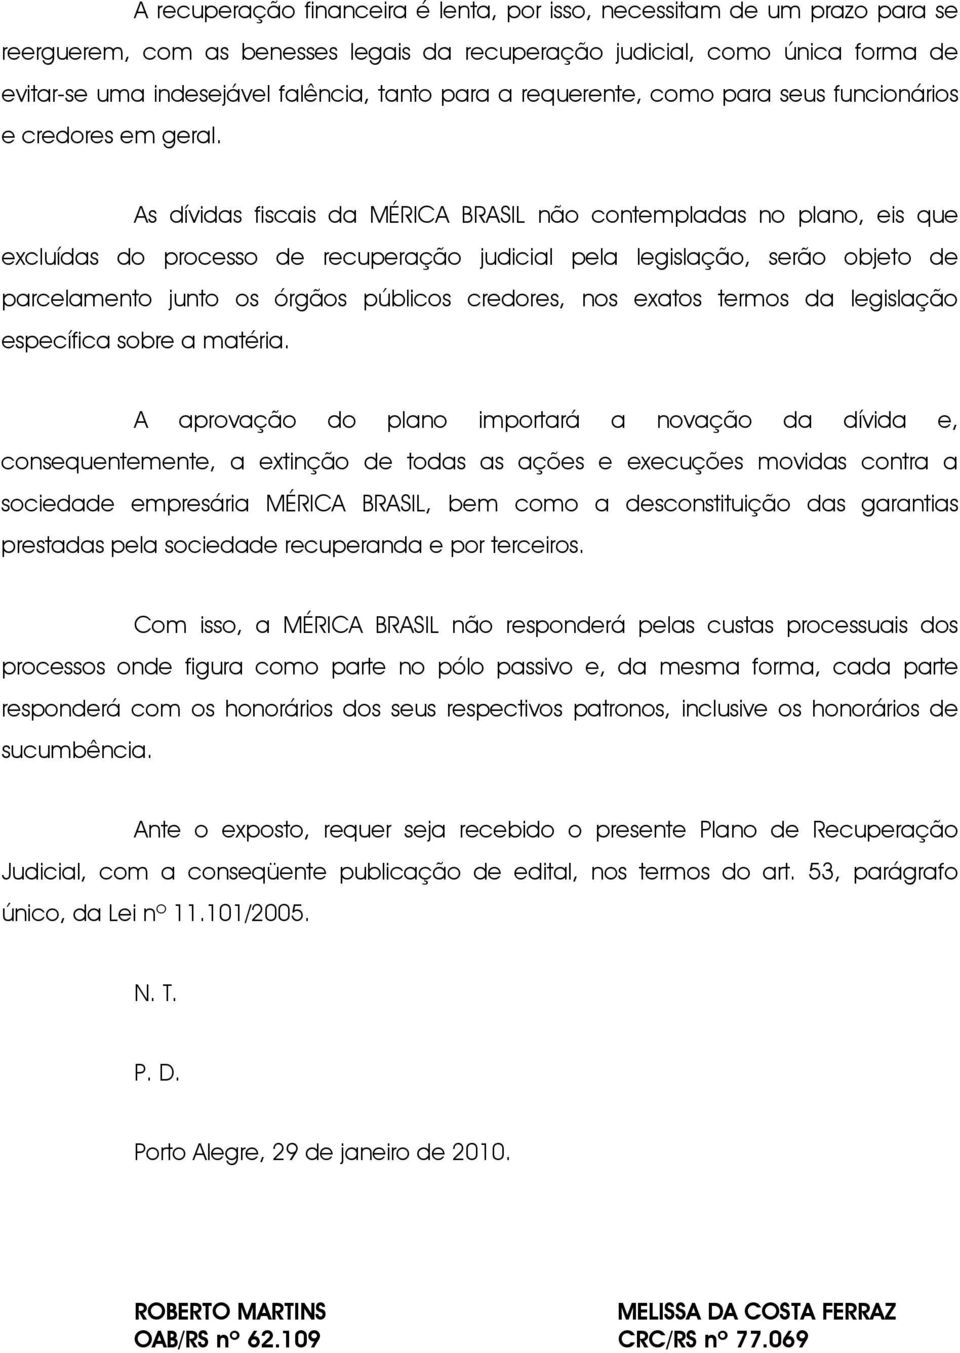 As dívidas fiscais da MÉRICA BRASIL não contempladas no plano, eis que excluídas do processo de recuperação judicial pela legislação, serão objeto de parcelamento junto os órgãos públicos credores,